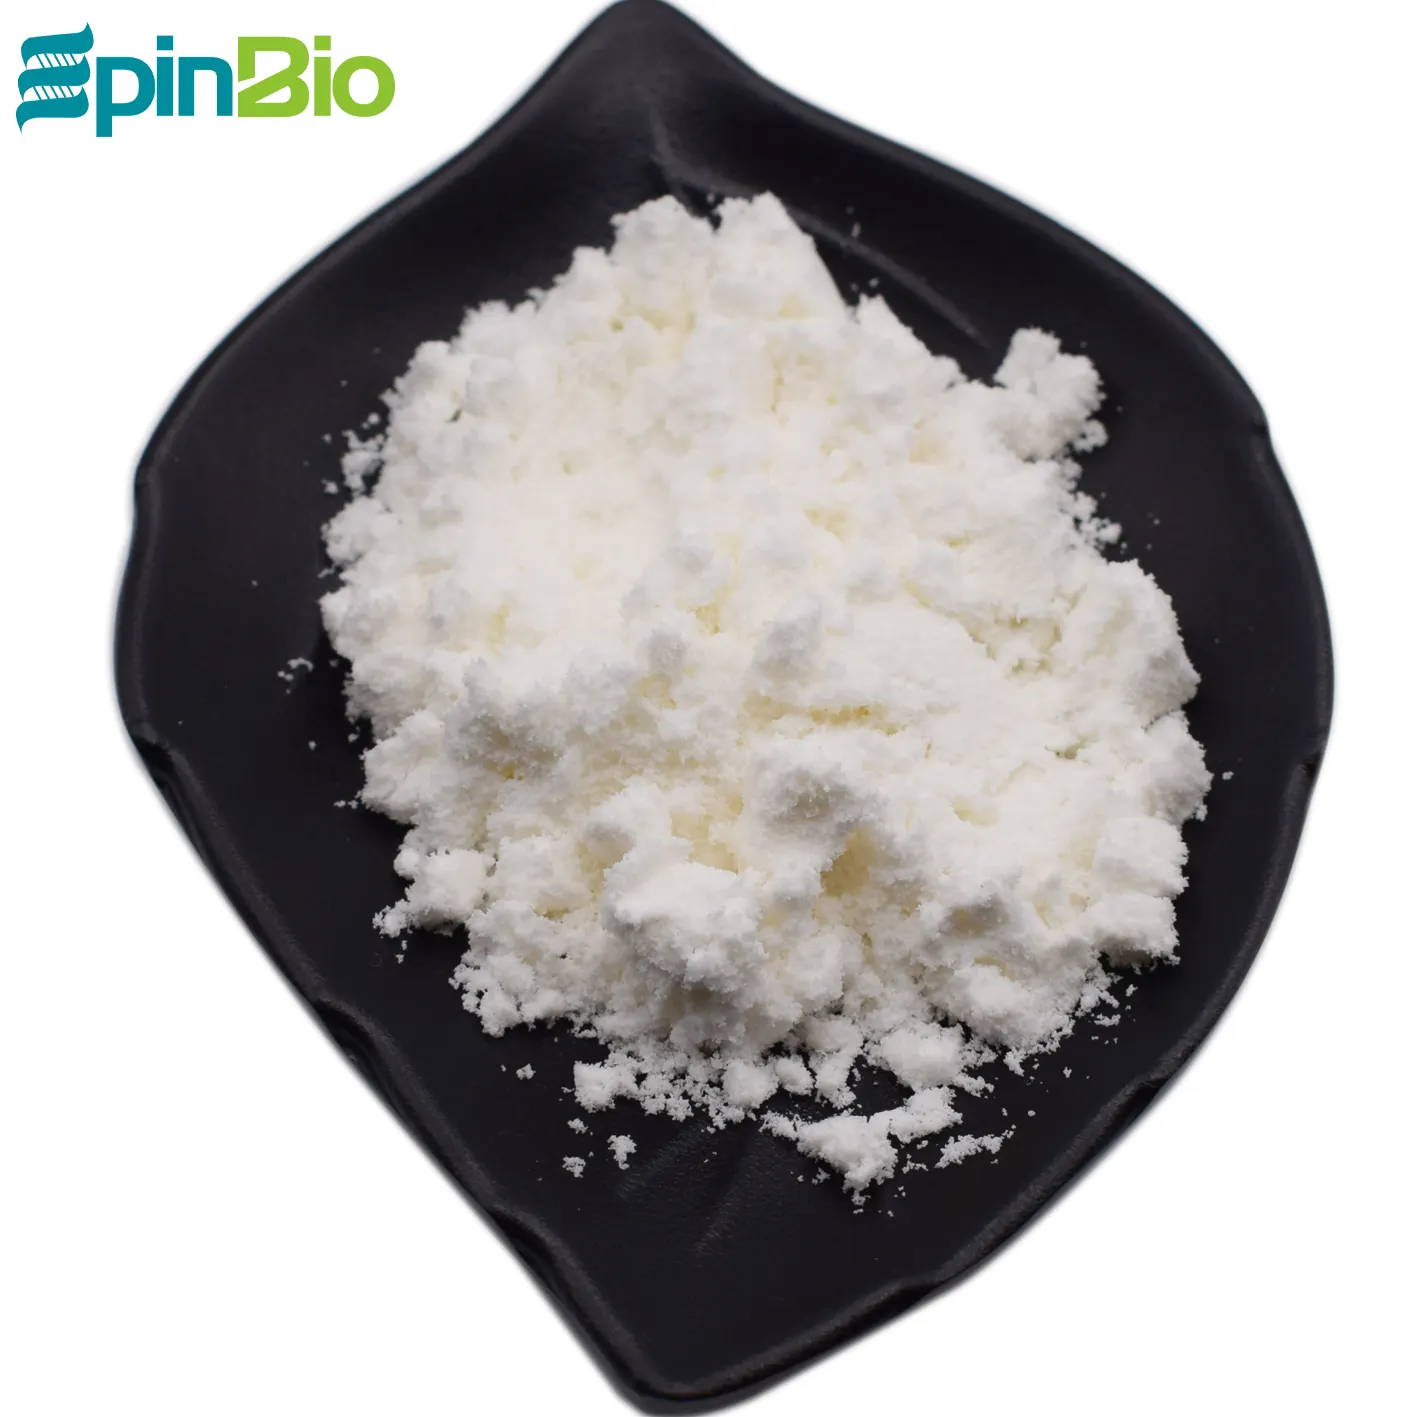 Epinbio provides High fat 50%~60% pure coconut milk powder